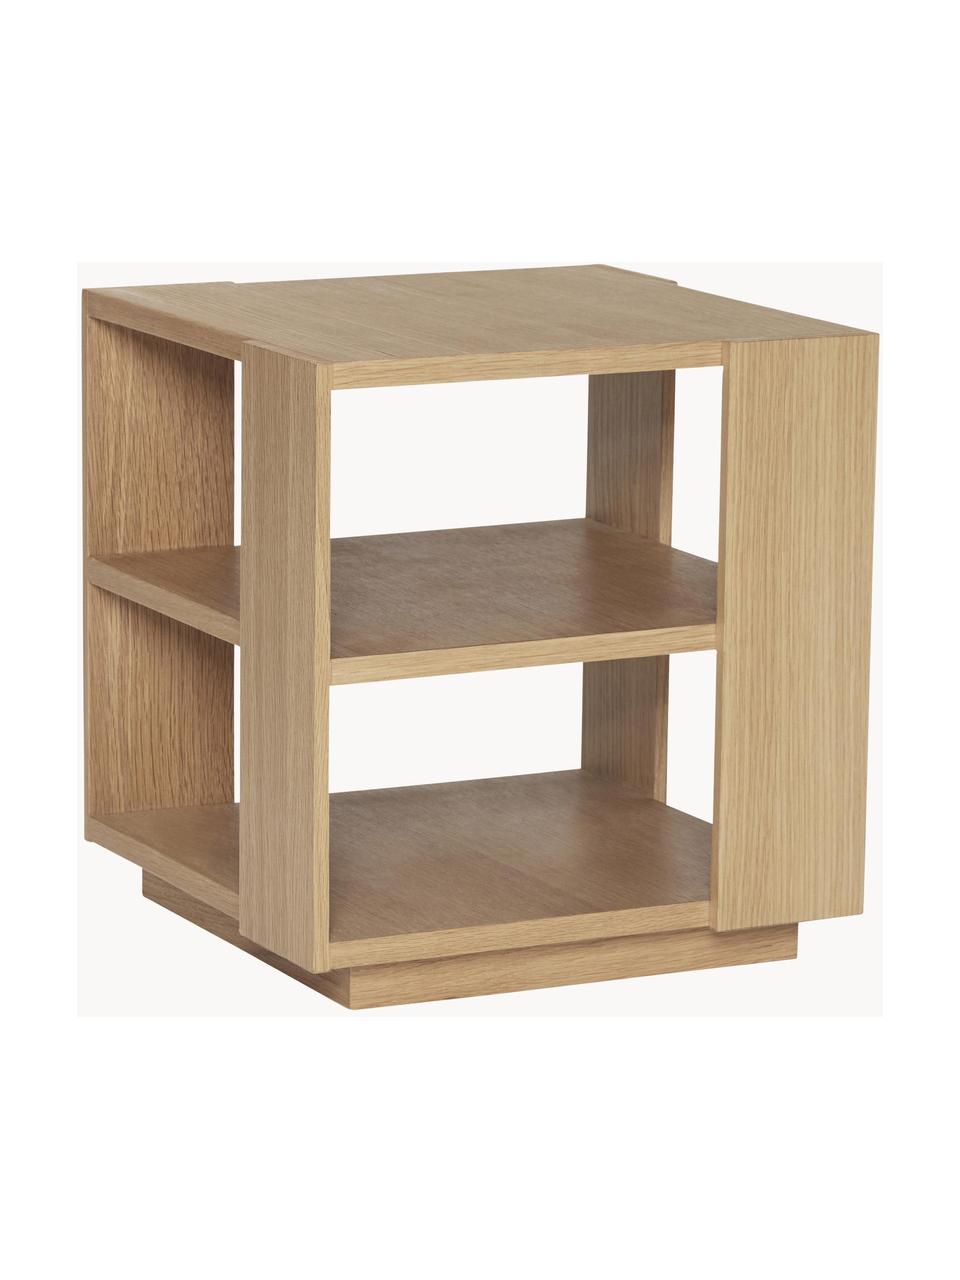 Dřevěný odkládací stolek Merge, Dubové dřevo

Tento produkt je vyroben z udržitelných zdrojů dřeva s certifikací FSC®., Dubové dřevo, Š 37 cm, V 38 cm